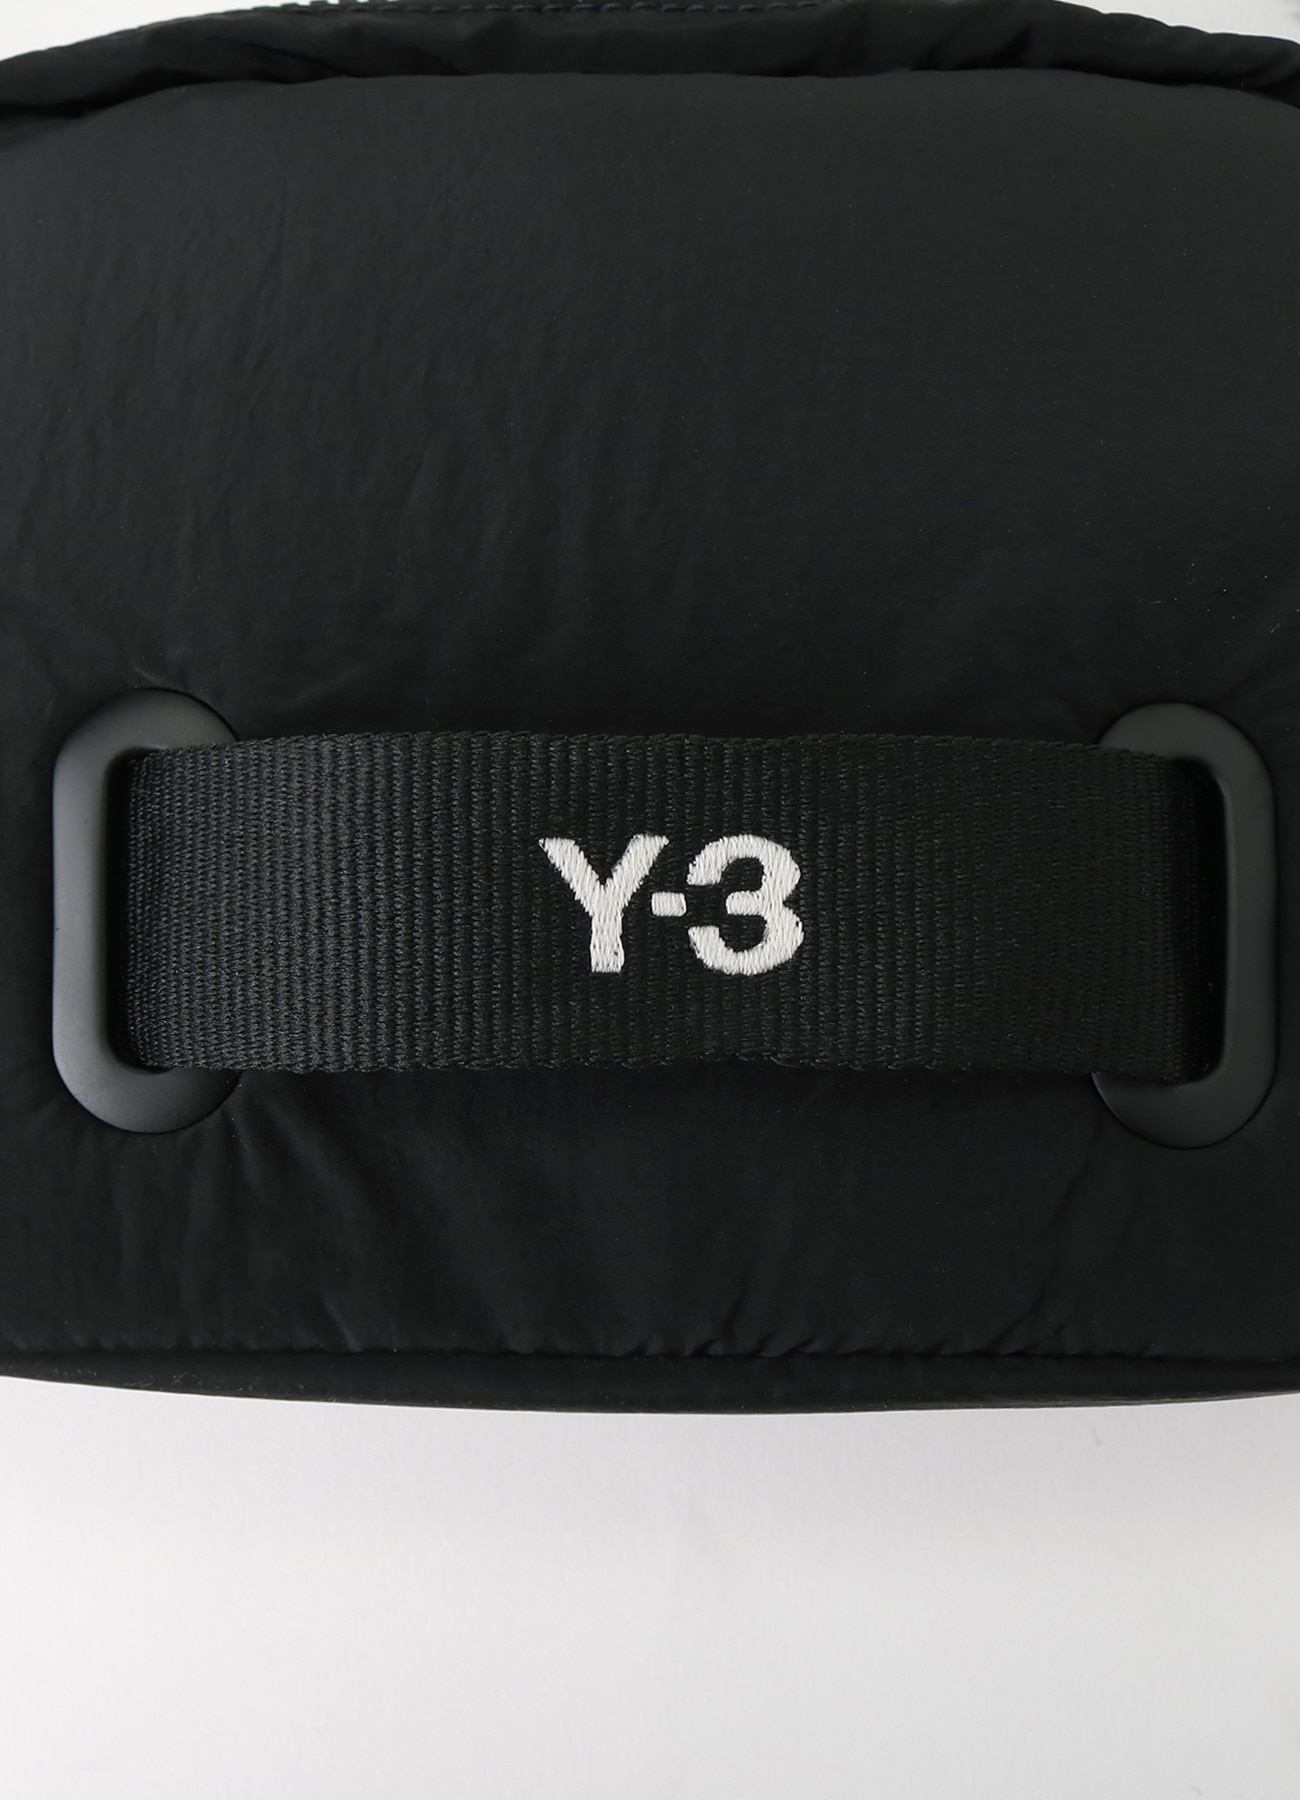 Y-3 X CROSSBODY BAG(FREE SIZE BLACK): Y-3｜WILDSIDE YOHJI YAMAMOTO